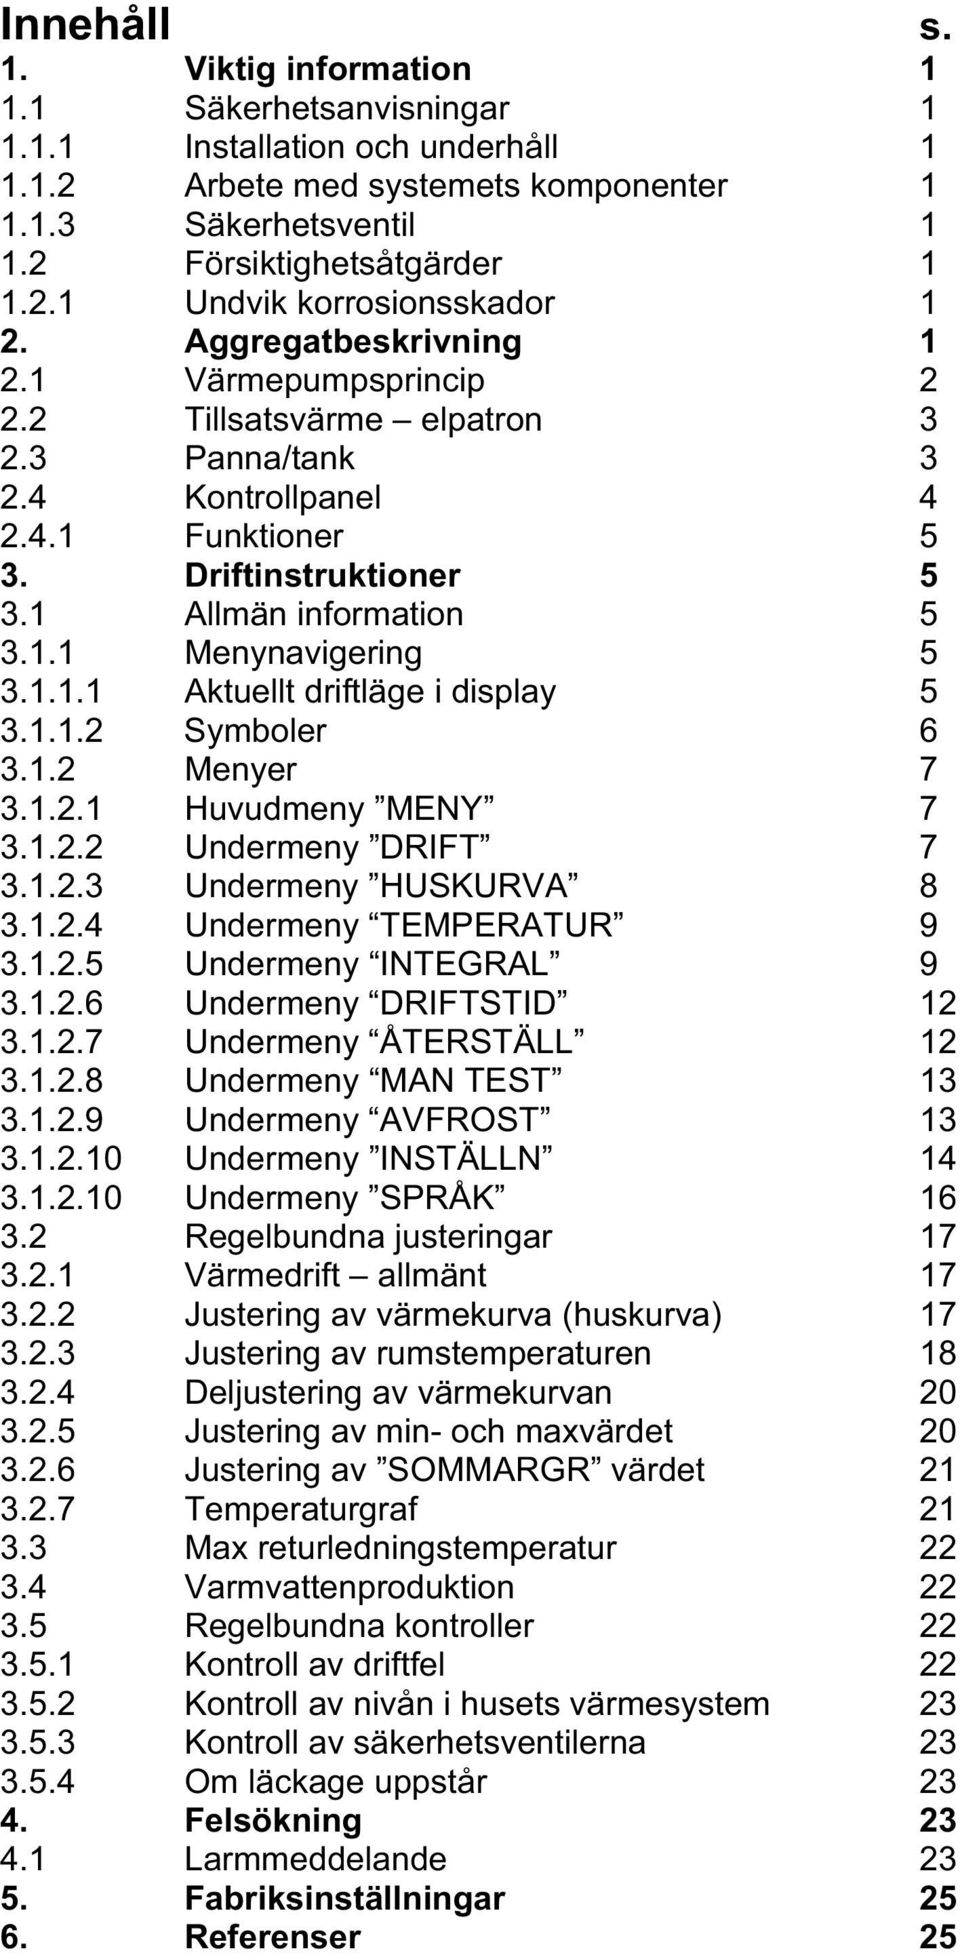 1.1.1 Aktuellt driftläge i display 5 3.1.1.2 Symboler 6 3.1.2 Menyer 7 3.1.2.1 Huvudmeny MENY 7 3.1.2.2 Undermeny DRIFT 7 3.1.2.3 Undermeny HUSKURVA 8 3.1.2.4 Undermeny TEMPERATUR 9 3.1.2.5 Undermeny INTEGRAL 9 3.